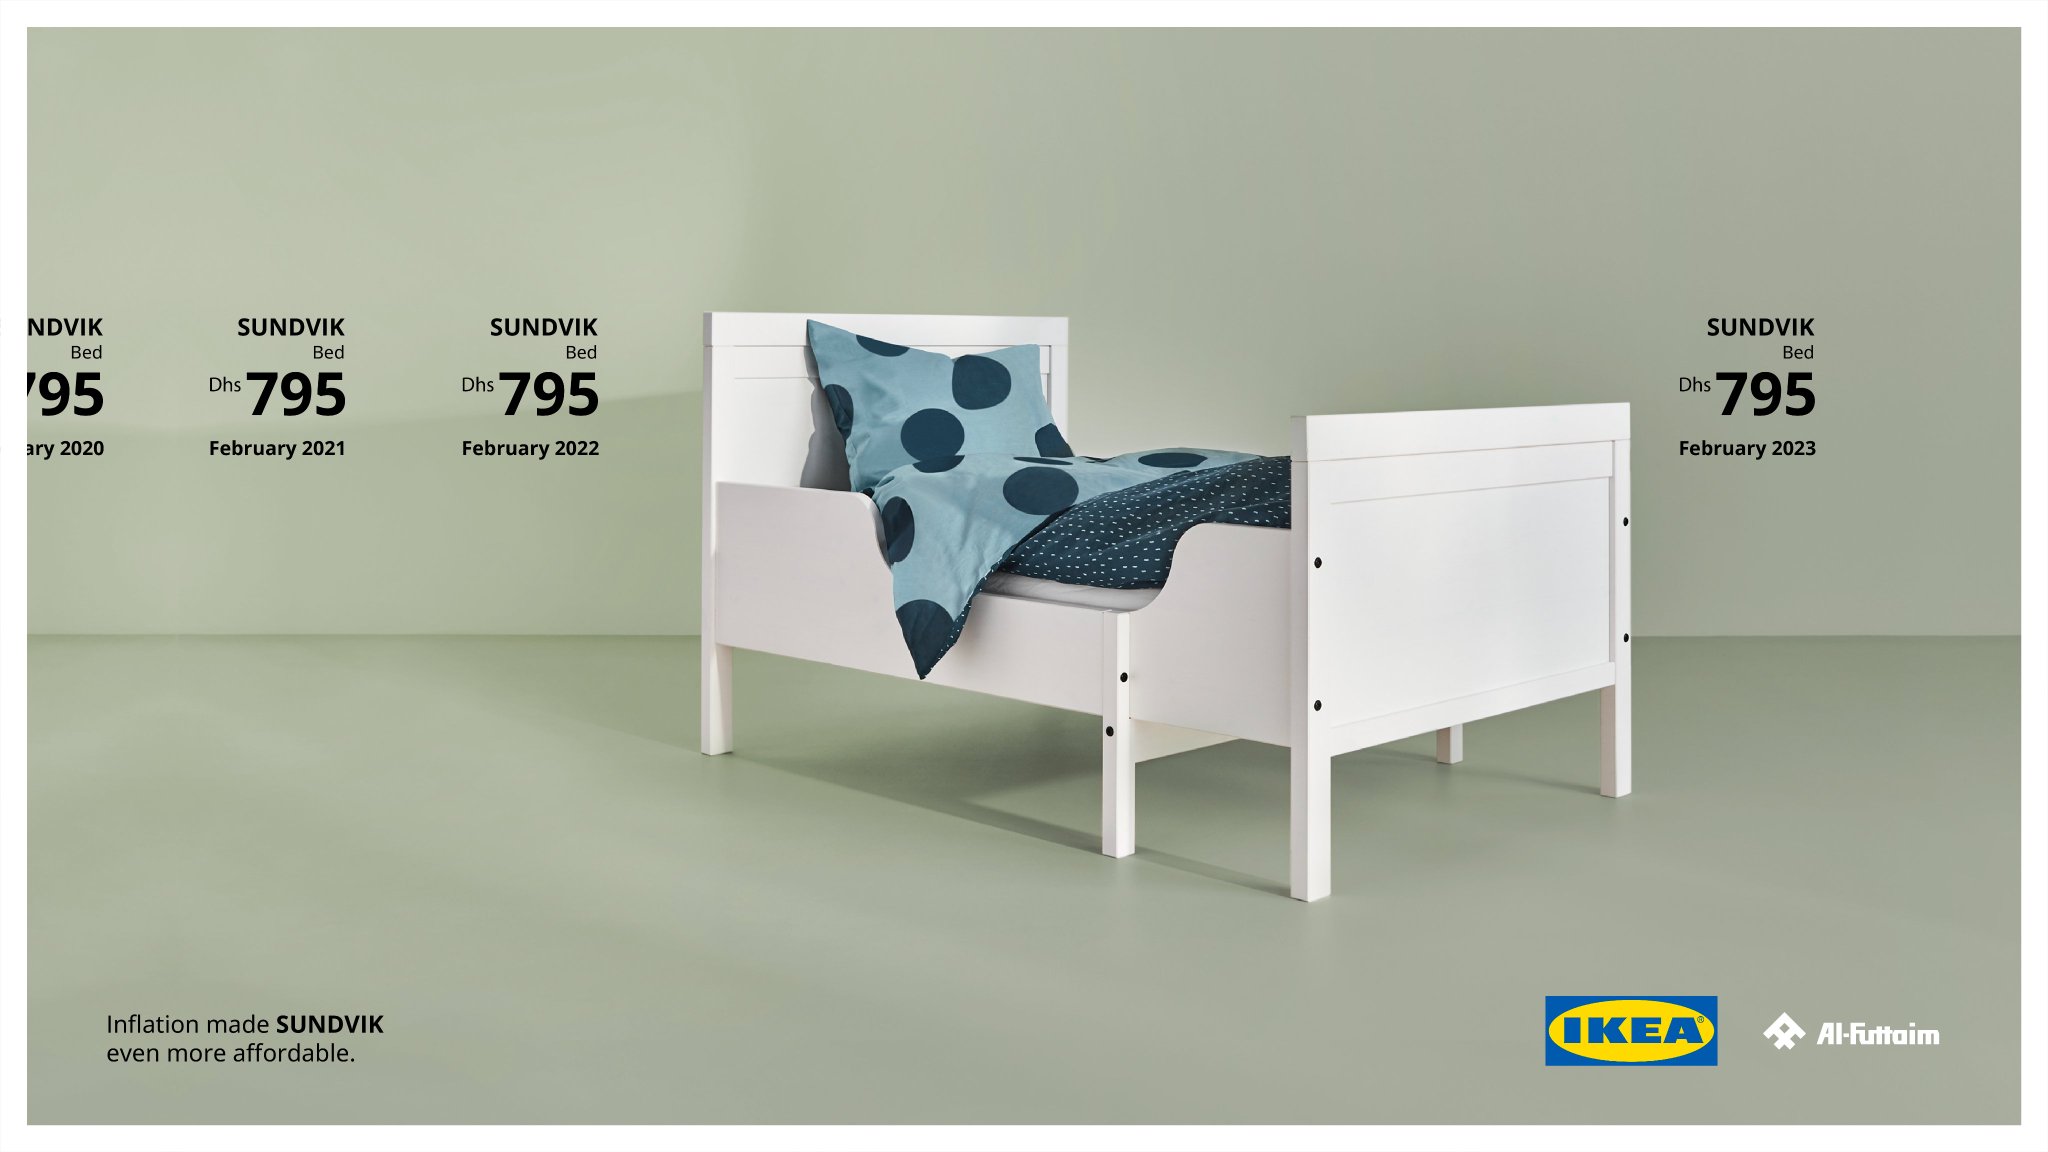 IKEA INFLATION-PROOF Sundvik